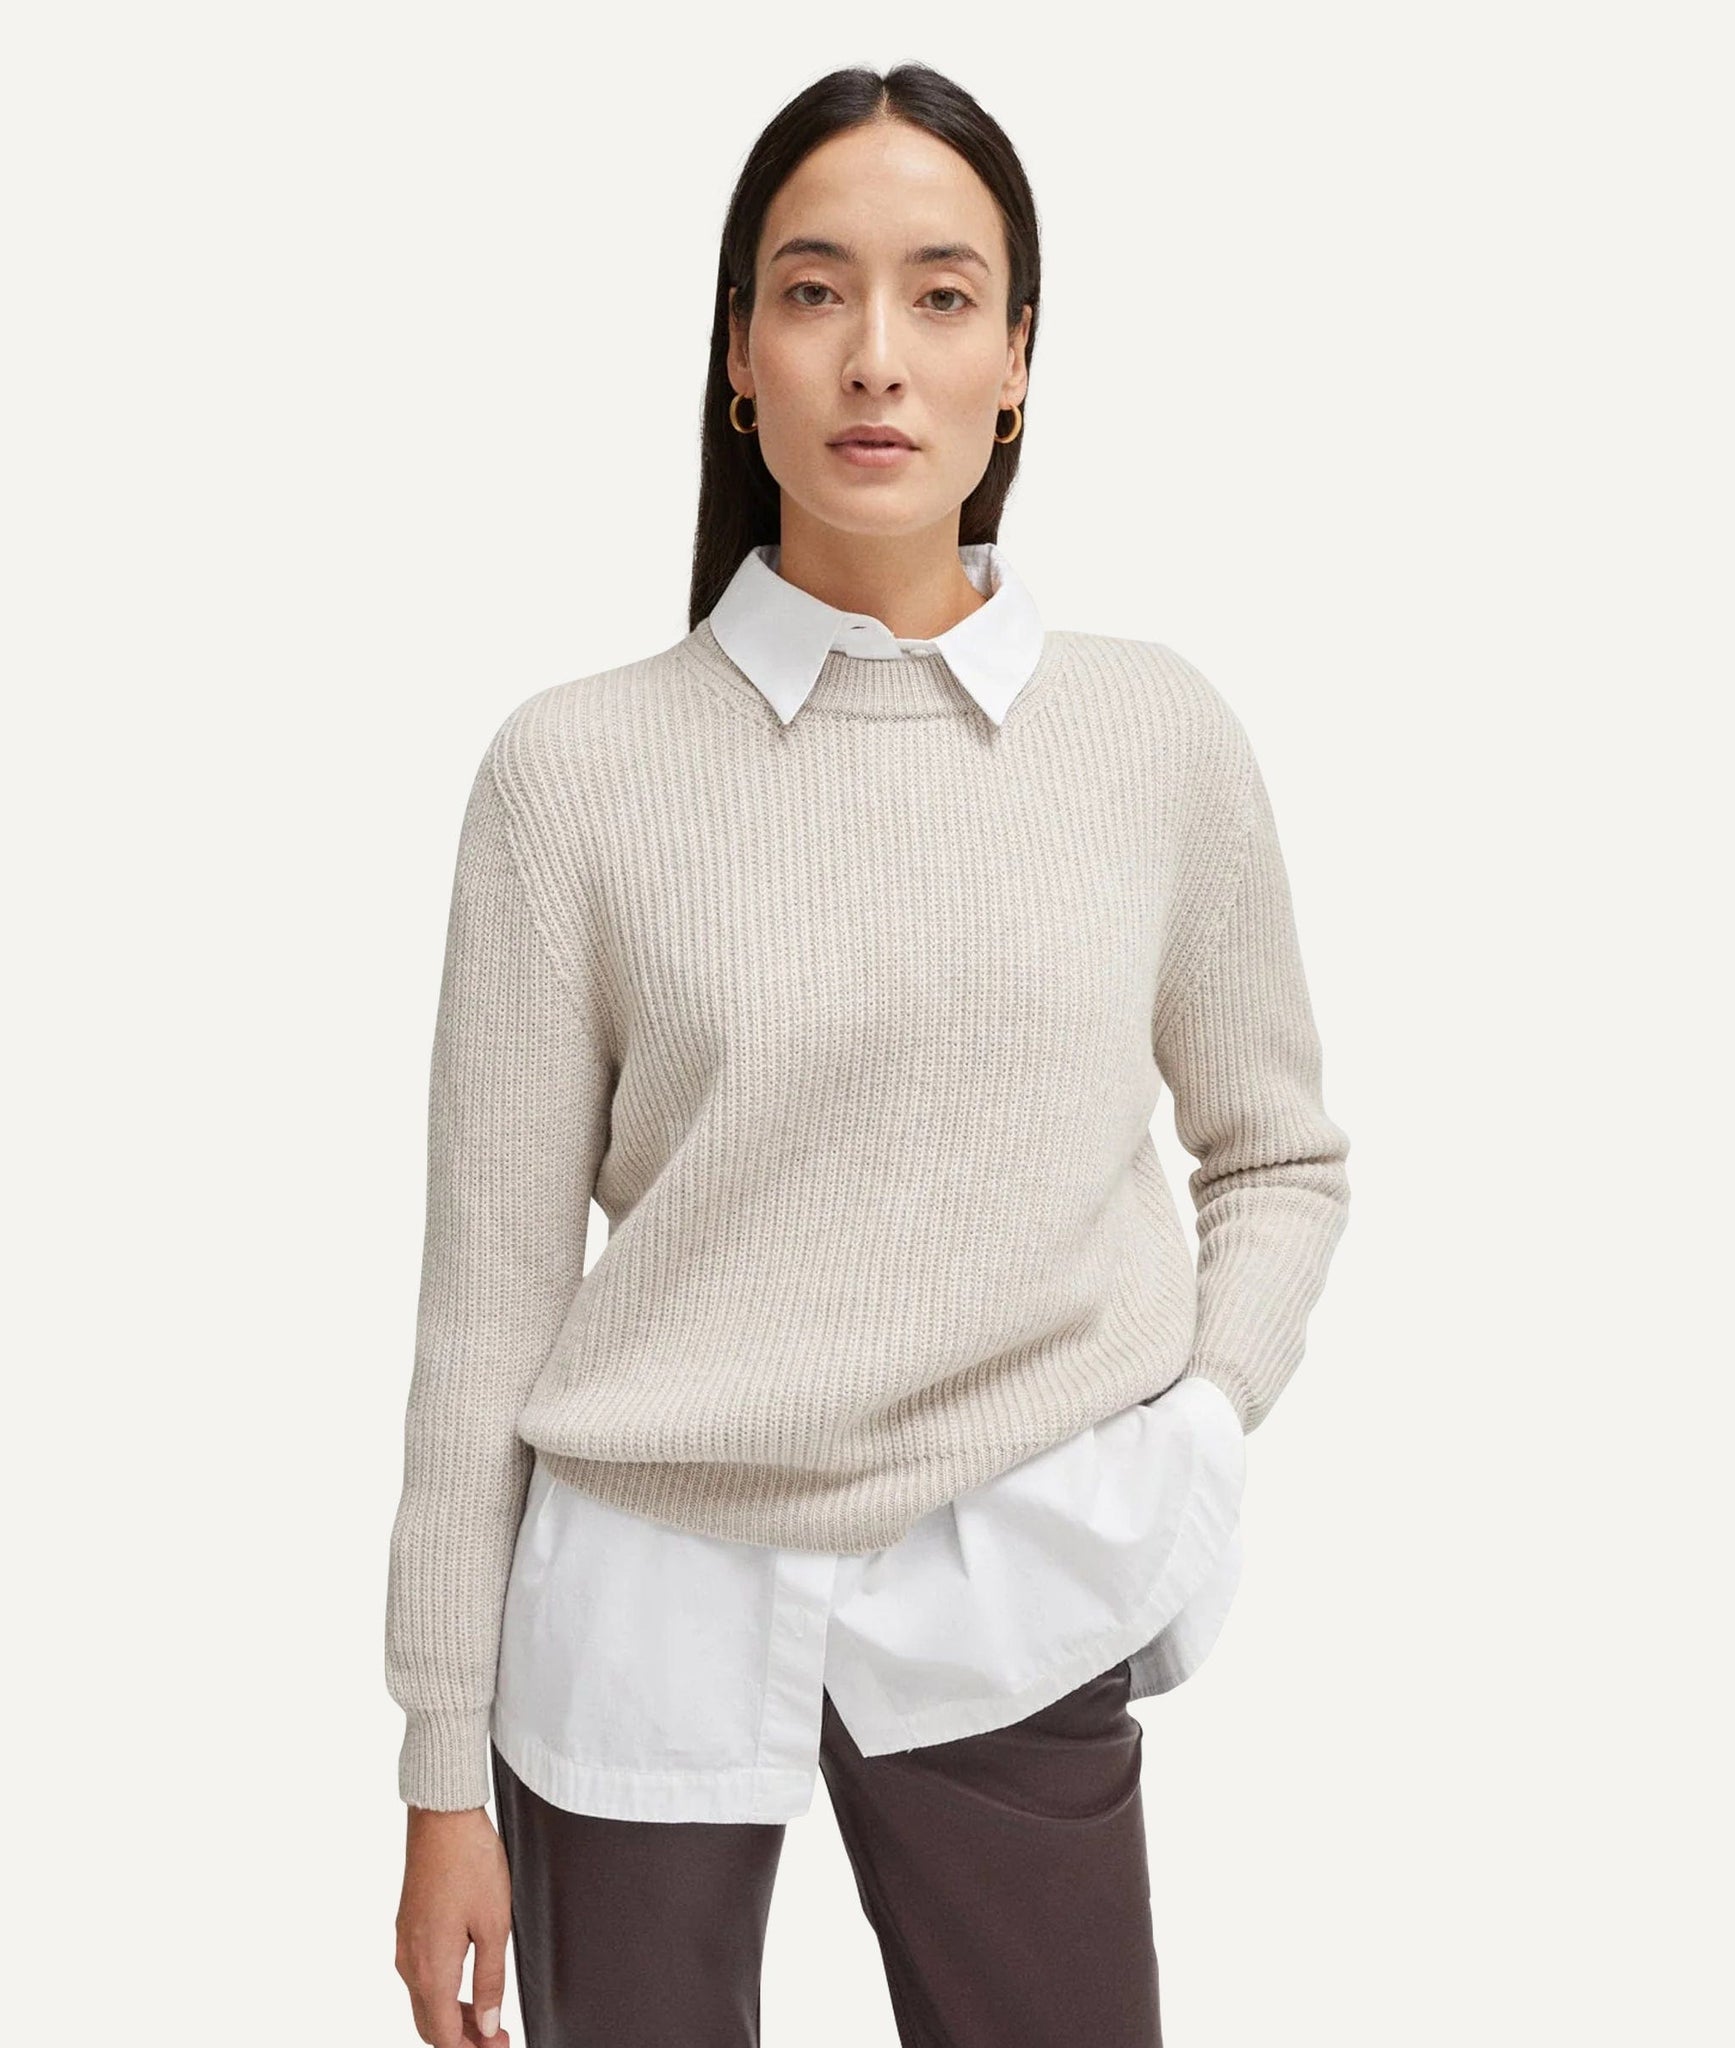 The Merino Wool Perkins Sweater